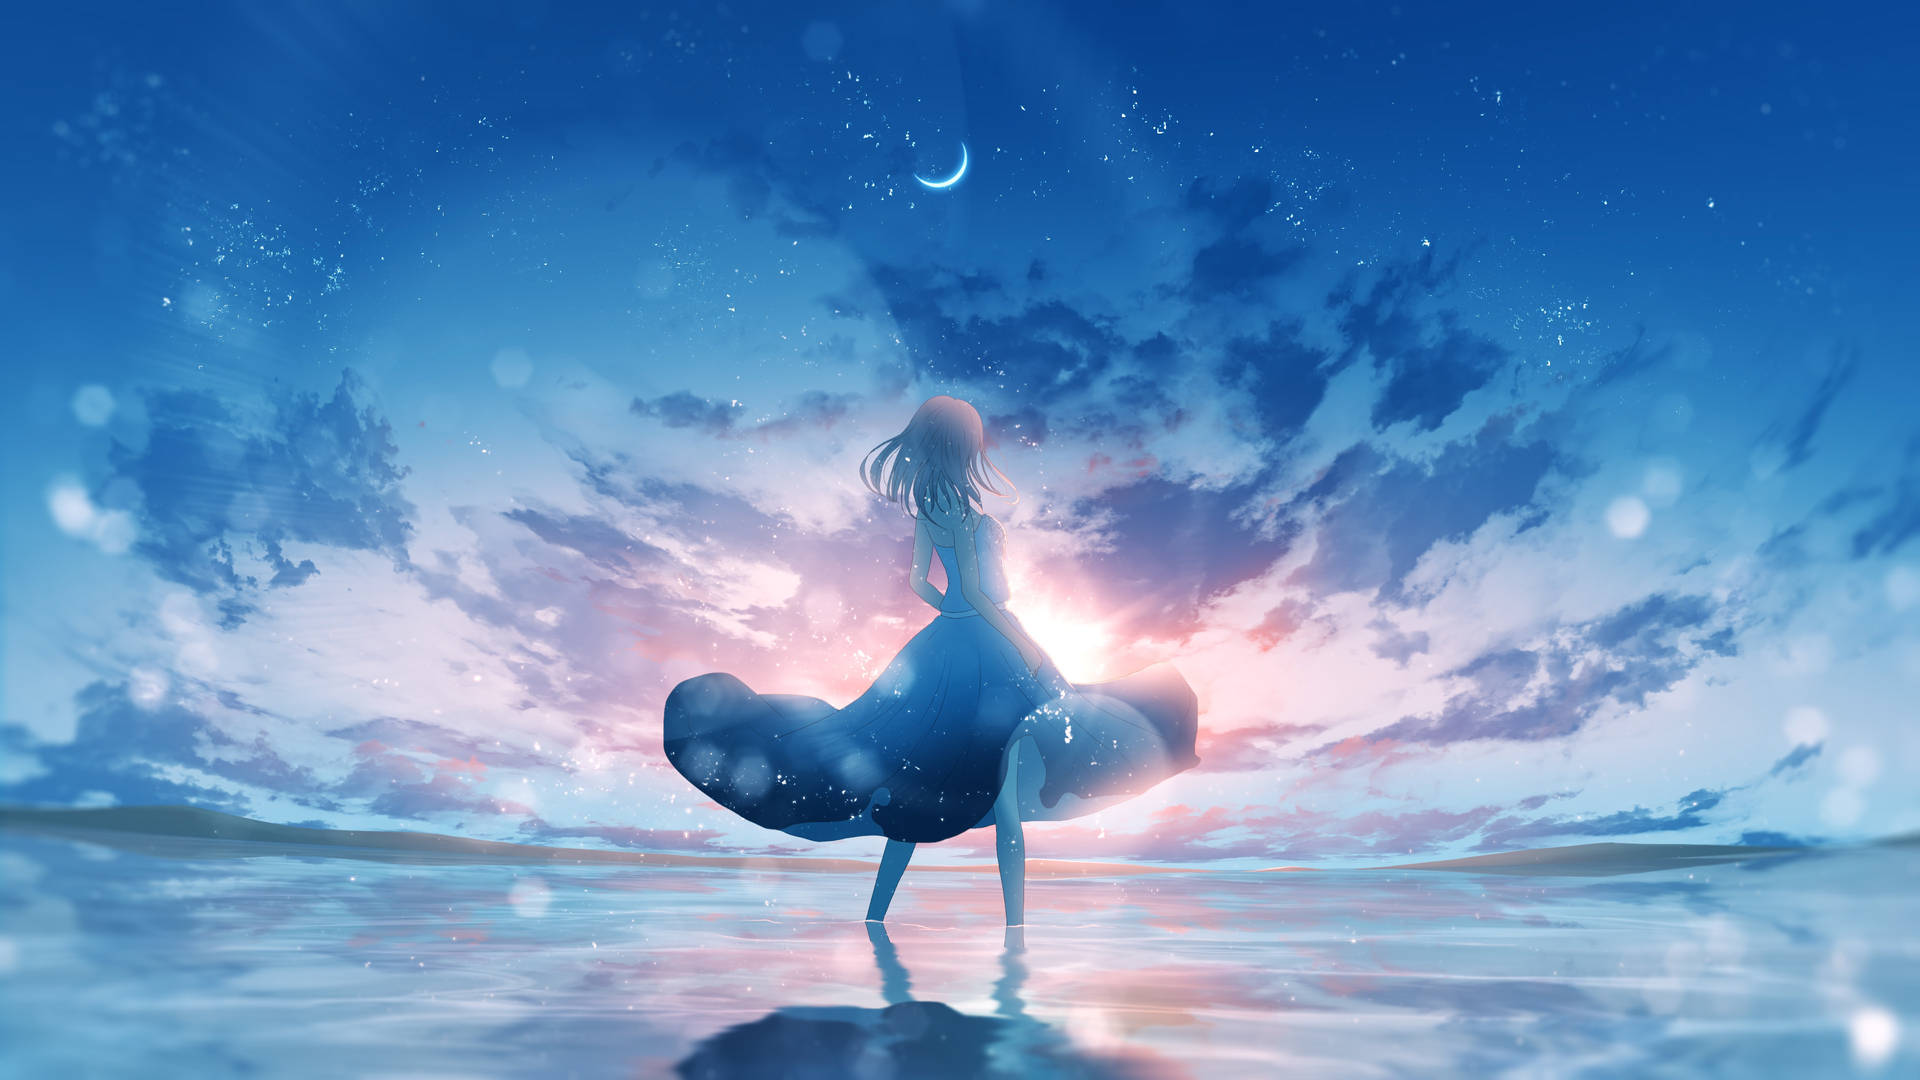 4karte De Anime Cielo Azul Fondo de pantalla